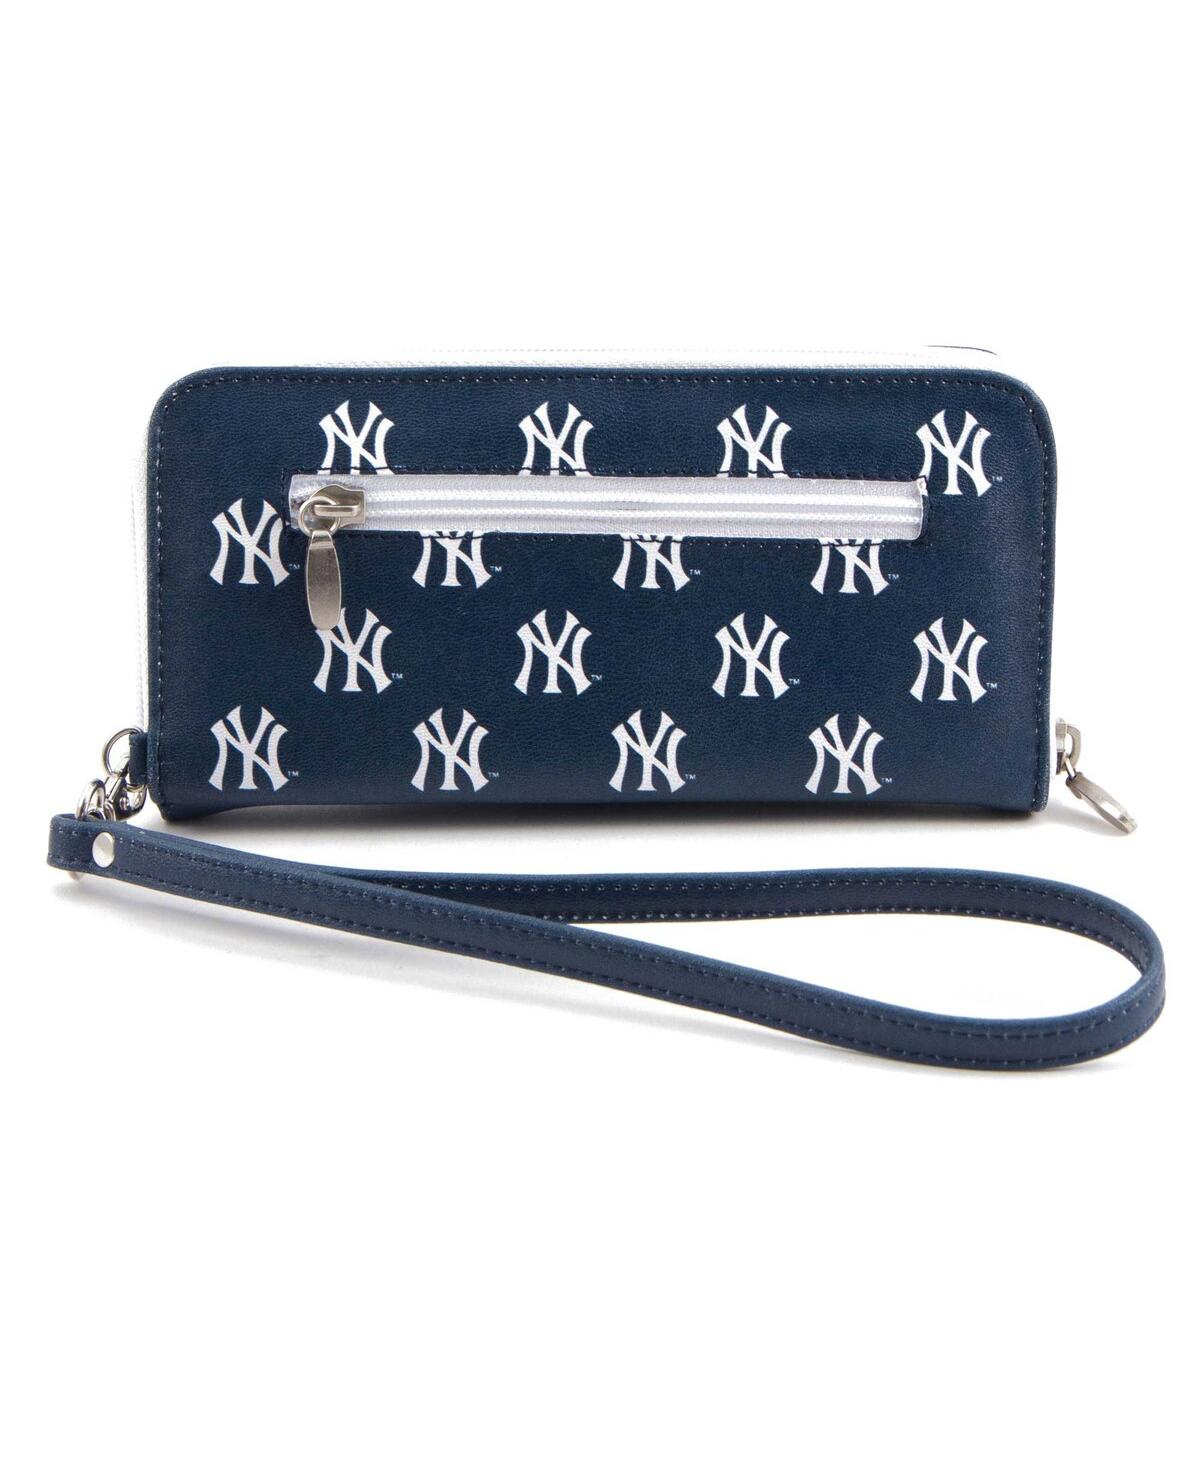 Eagles Wings Women's New York Yankees Zip-around Wristlet Wallet In Blue